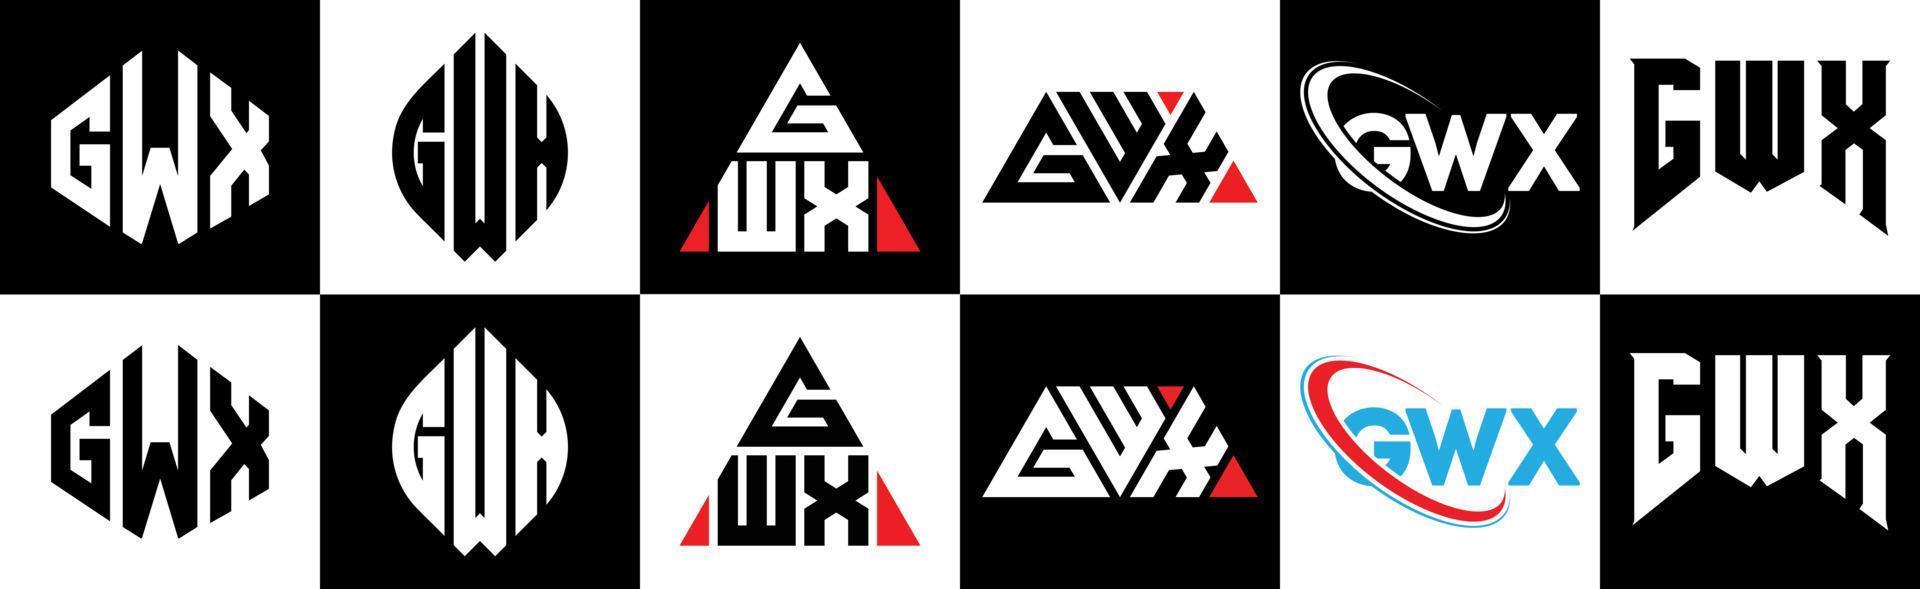 création de logo de lettre gwx en six styles. gwx polygone, cercle, triangle, hexagone, style plat et simple avec logo de lettre de variation de couleur noir et blanc dans un plan de travail. logo minimaliste et classique gwx vecteur